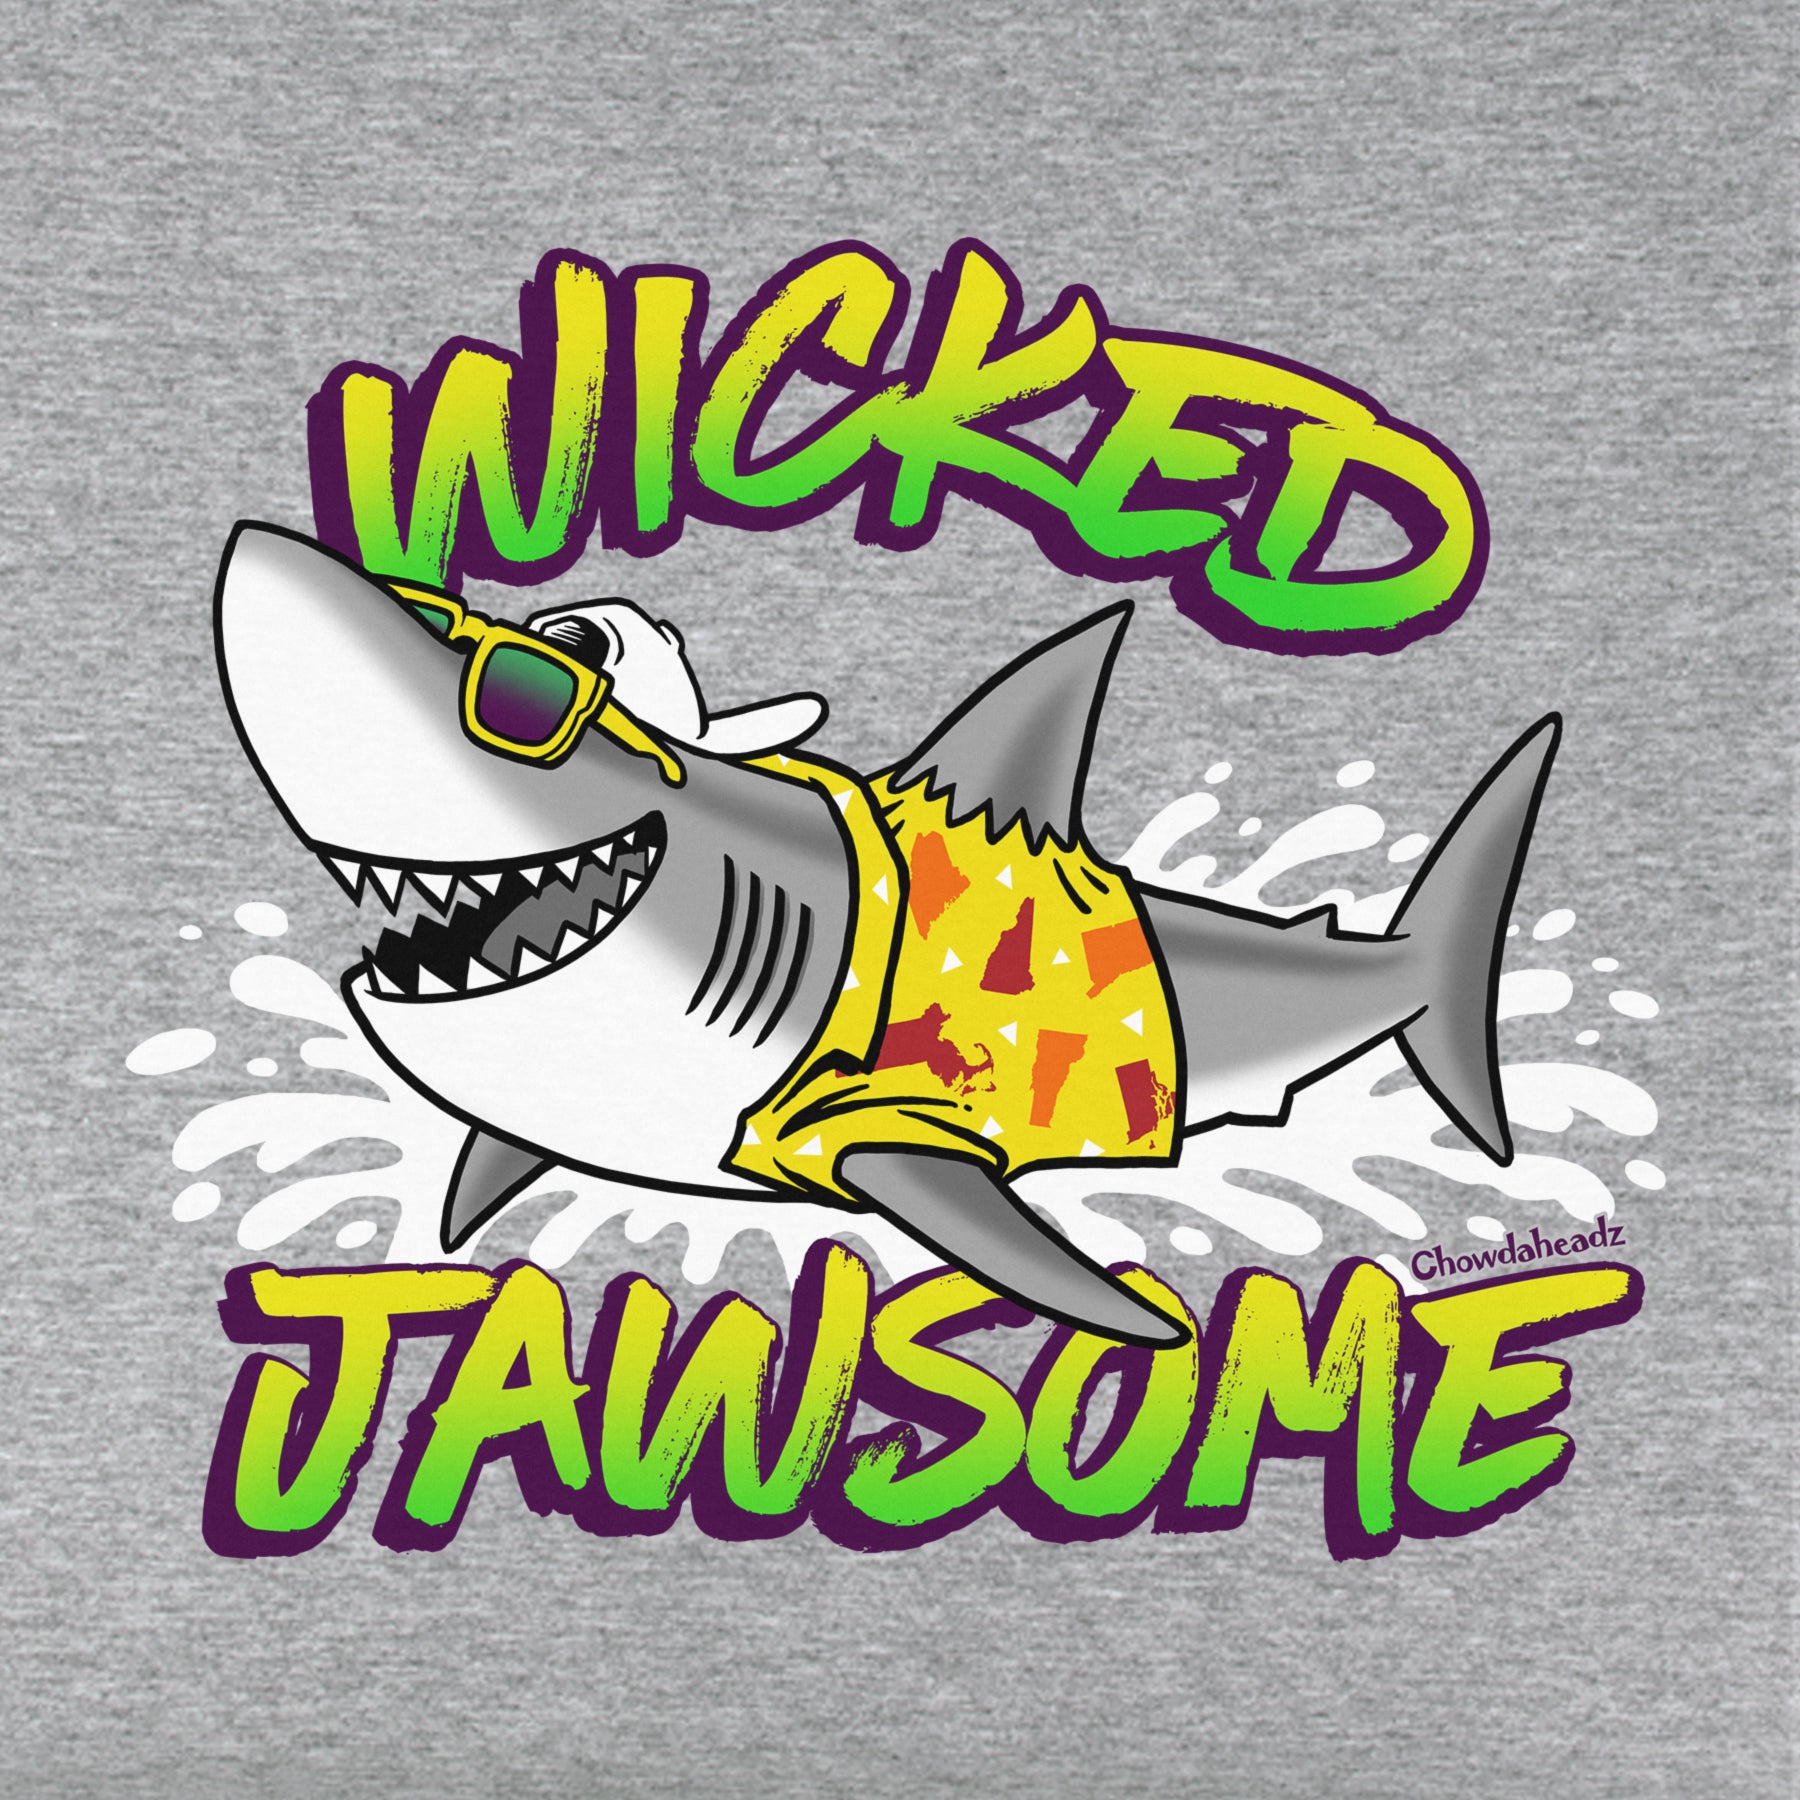 Wicked Jawsome Youth T-Shirt - Chowdaheadz